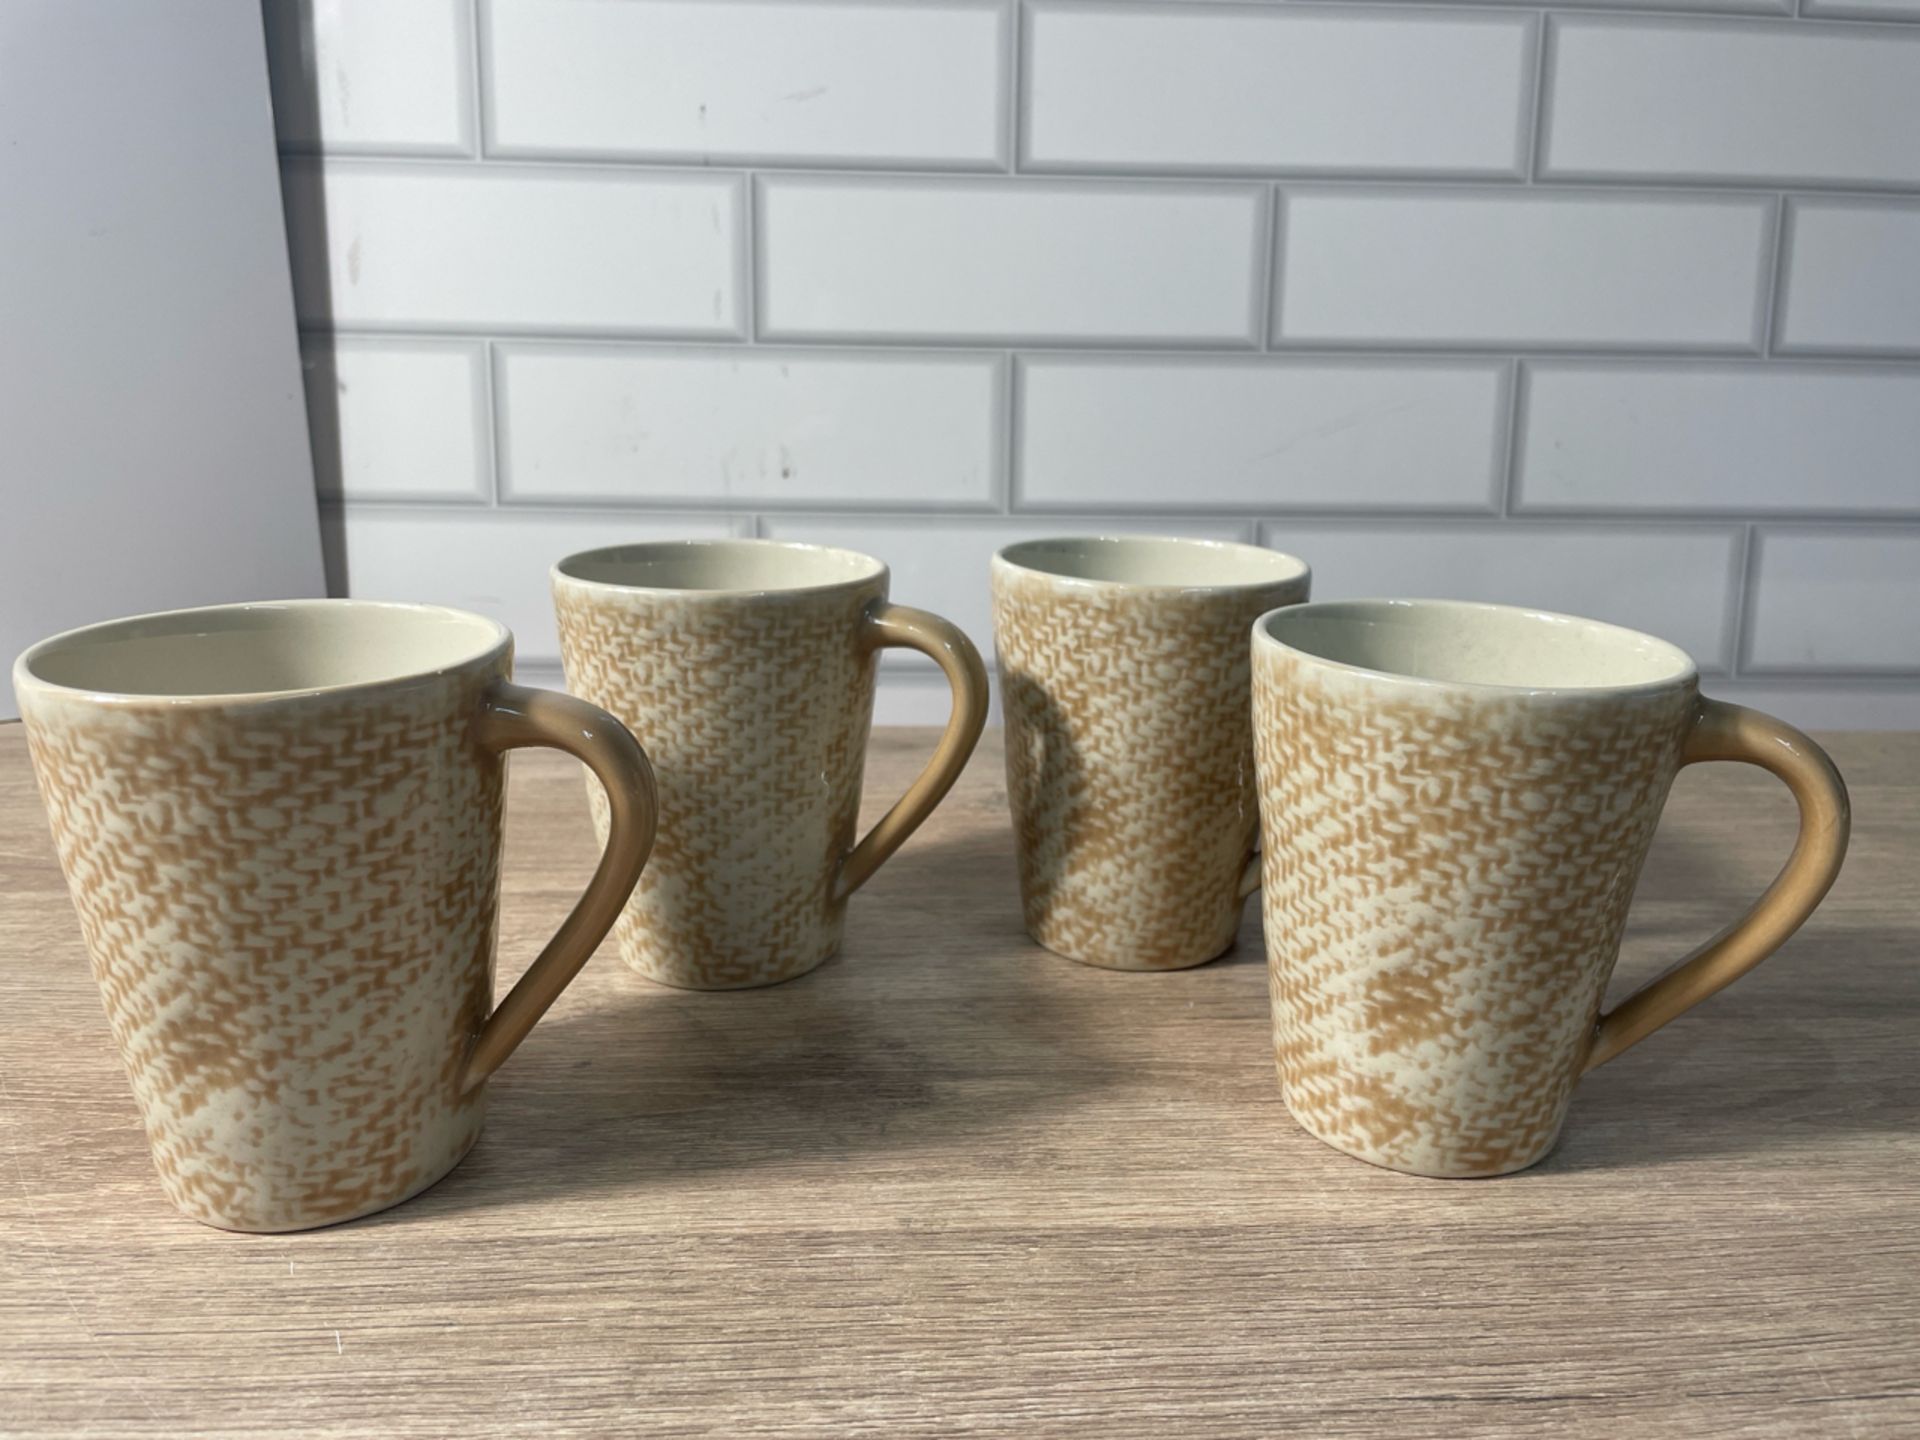 Dalton Tea/Coffee Mug x 4